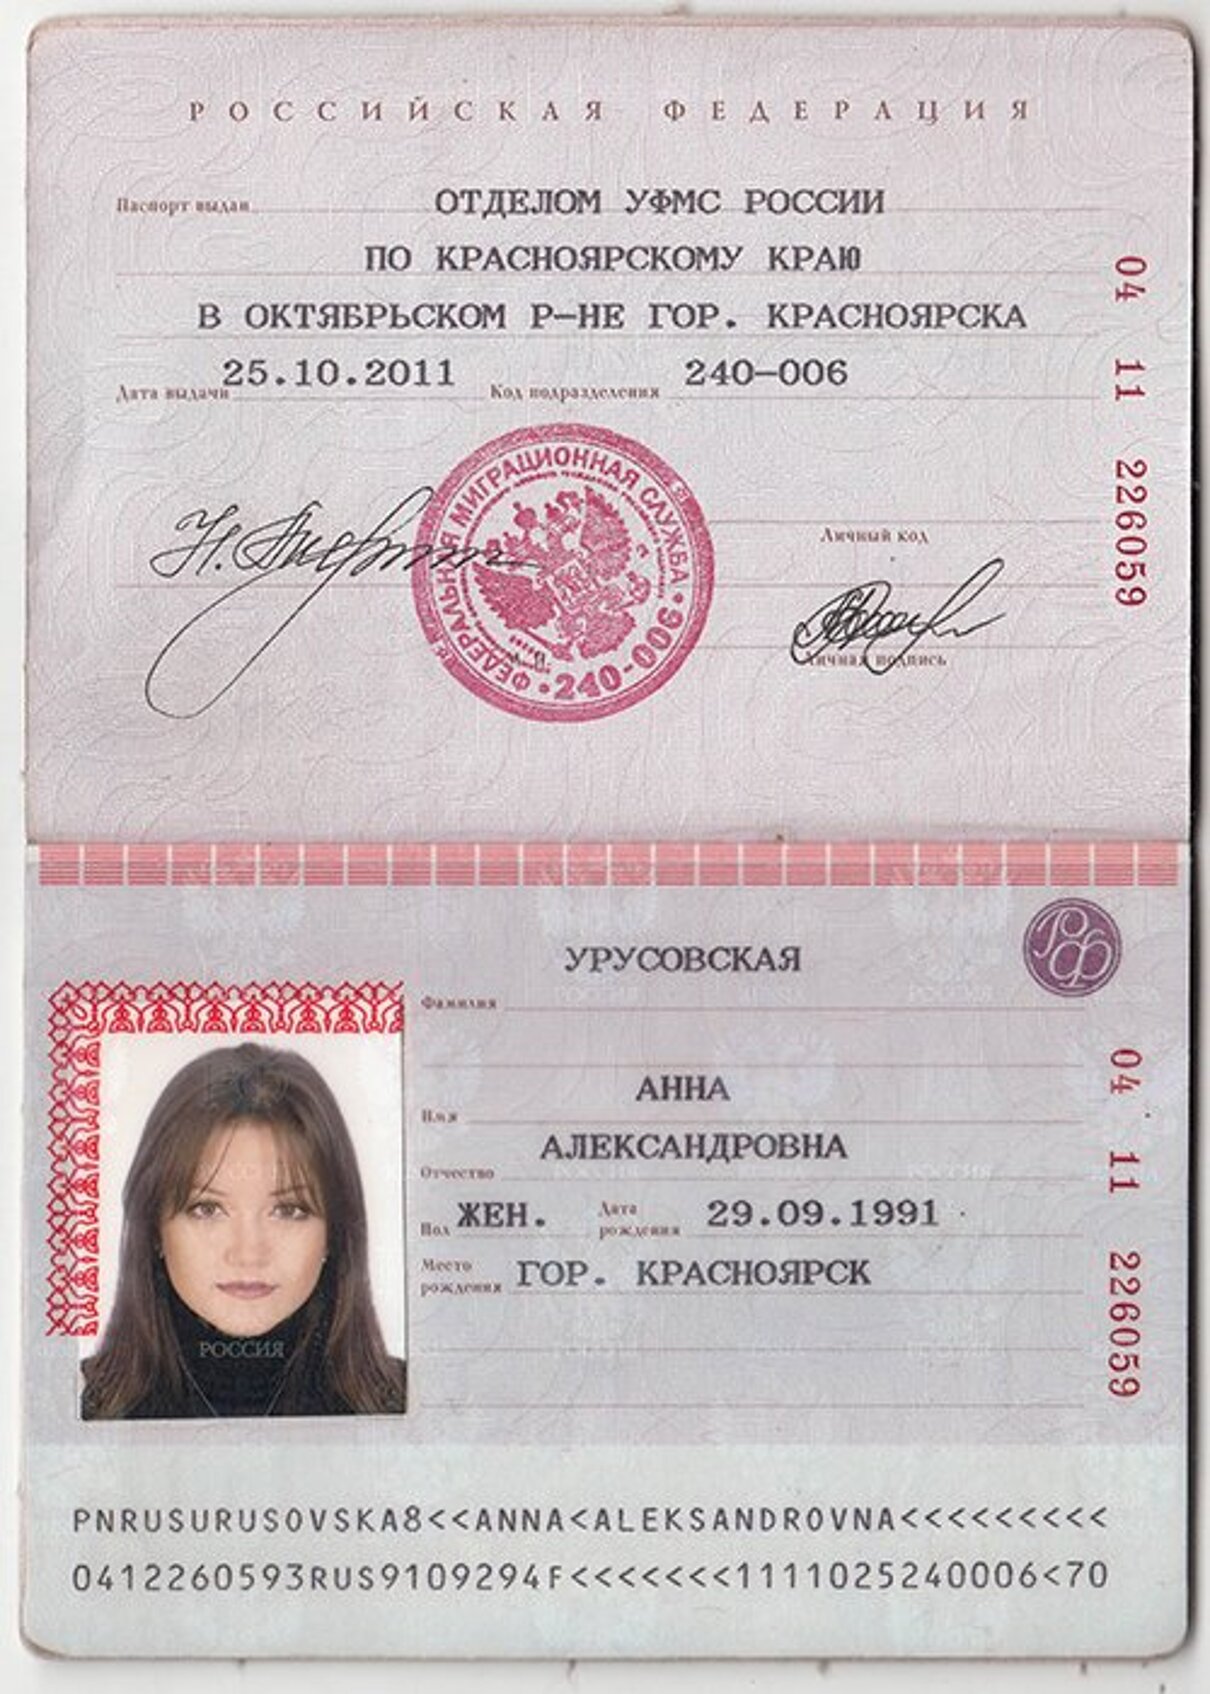 Фото Паспорта 18 Лет Девушка Для Фотошопа